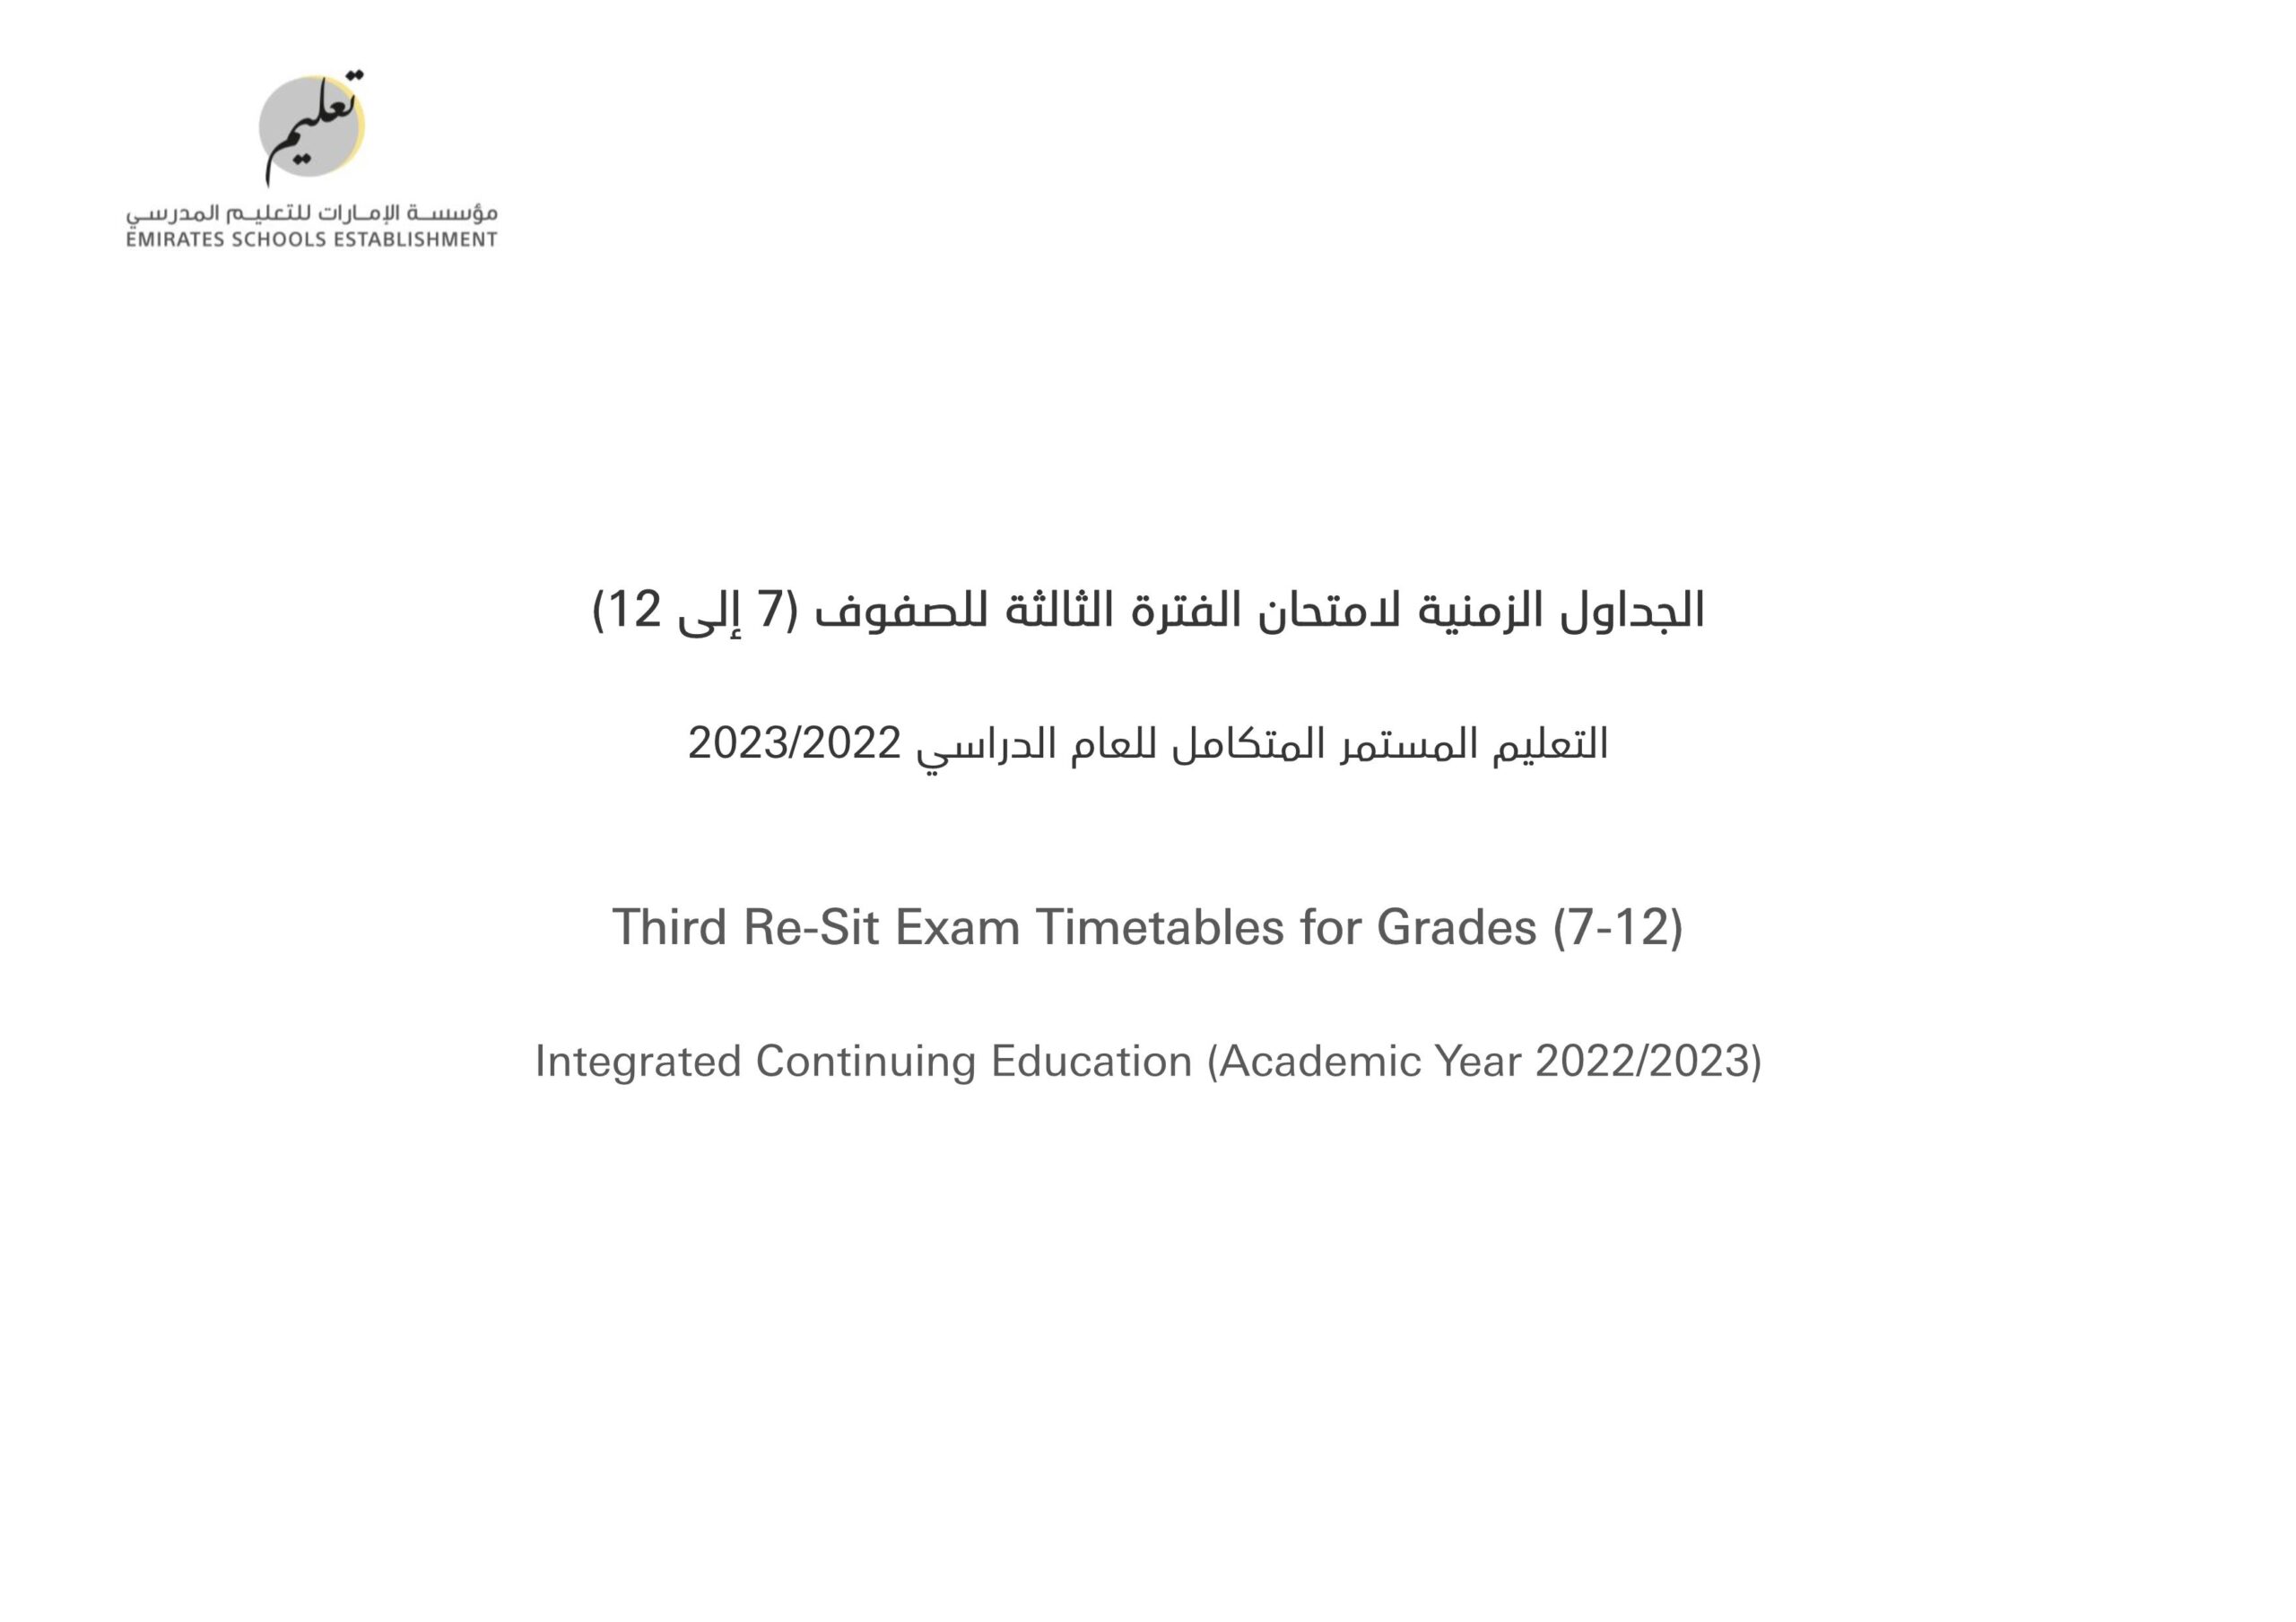 الجداول الزمنية لامتحان الفترة الثالثة للتعليم المستمر المتكامل للصفوف السابع إلى الثاني عشر 2022-2023 